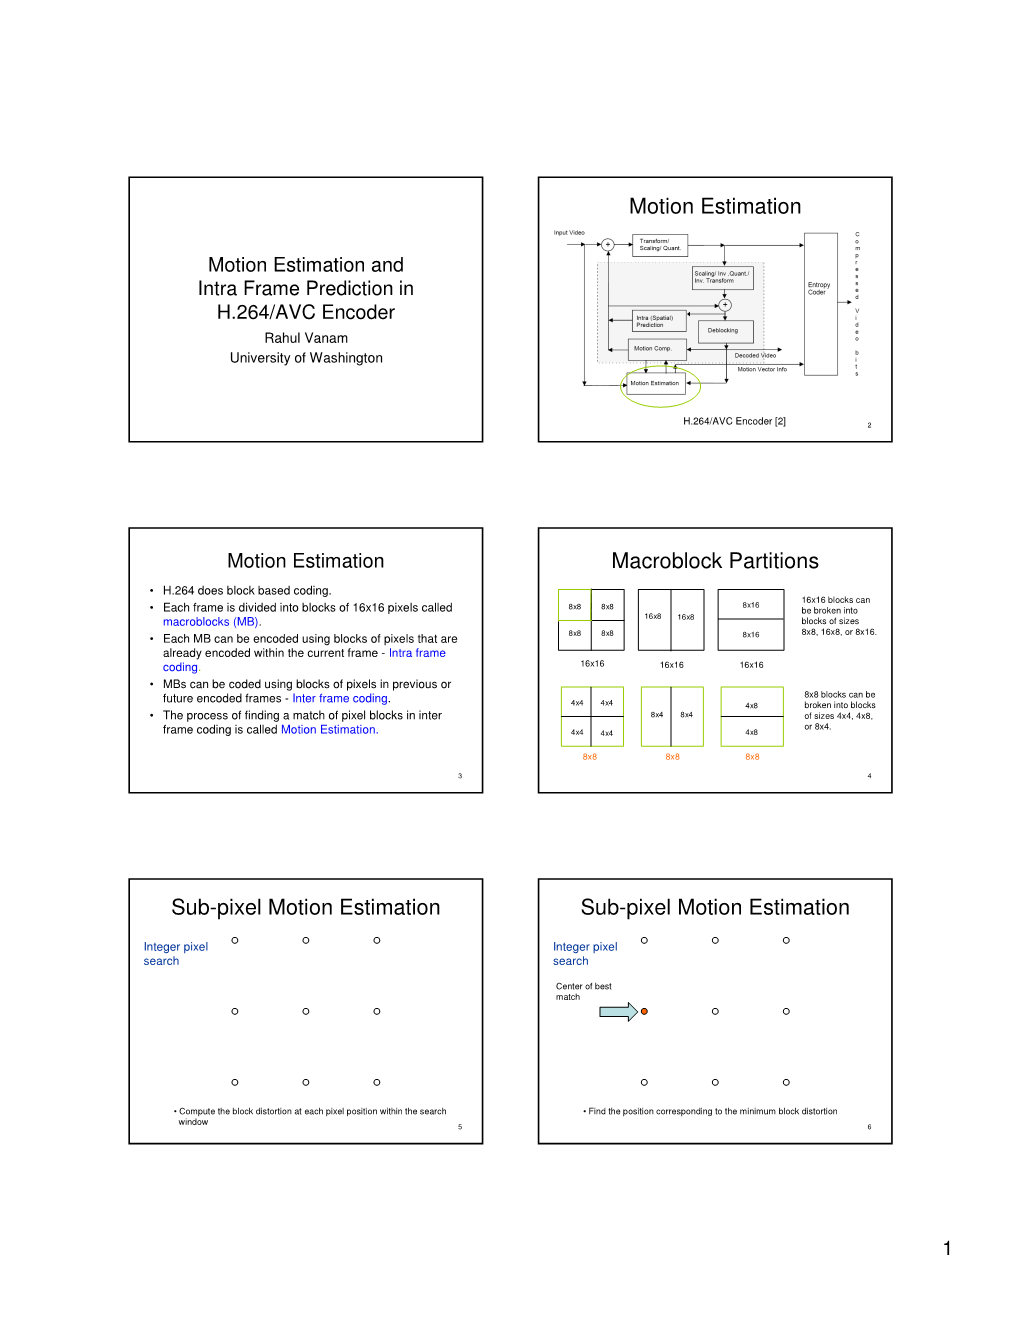 Motion Estimation Macroblock Partitions Sub-Pixel Motion